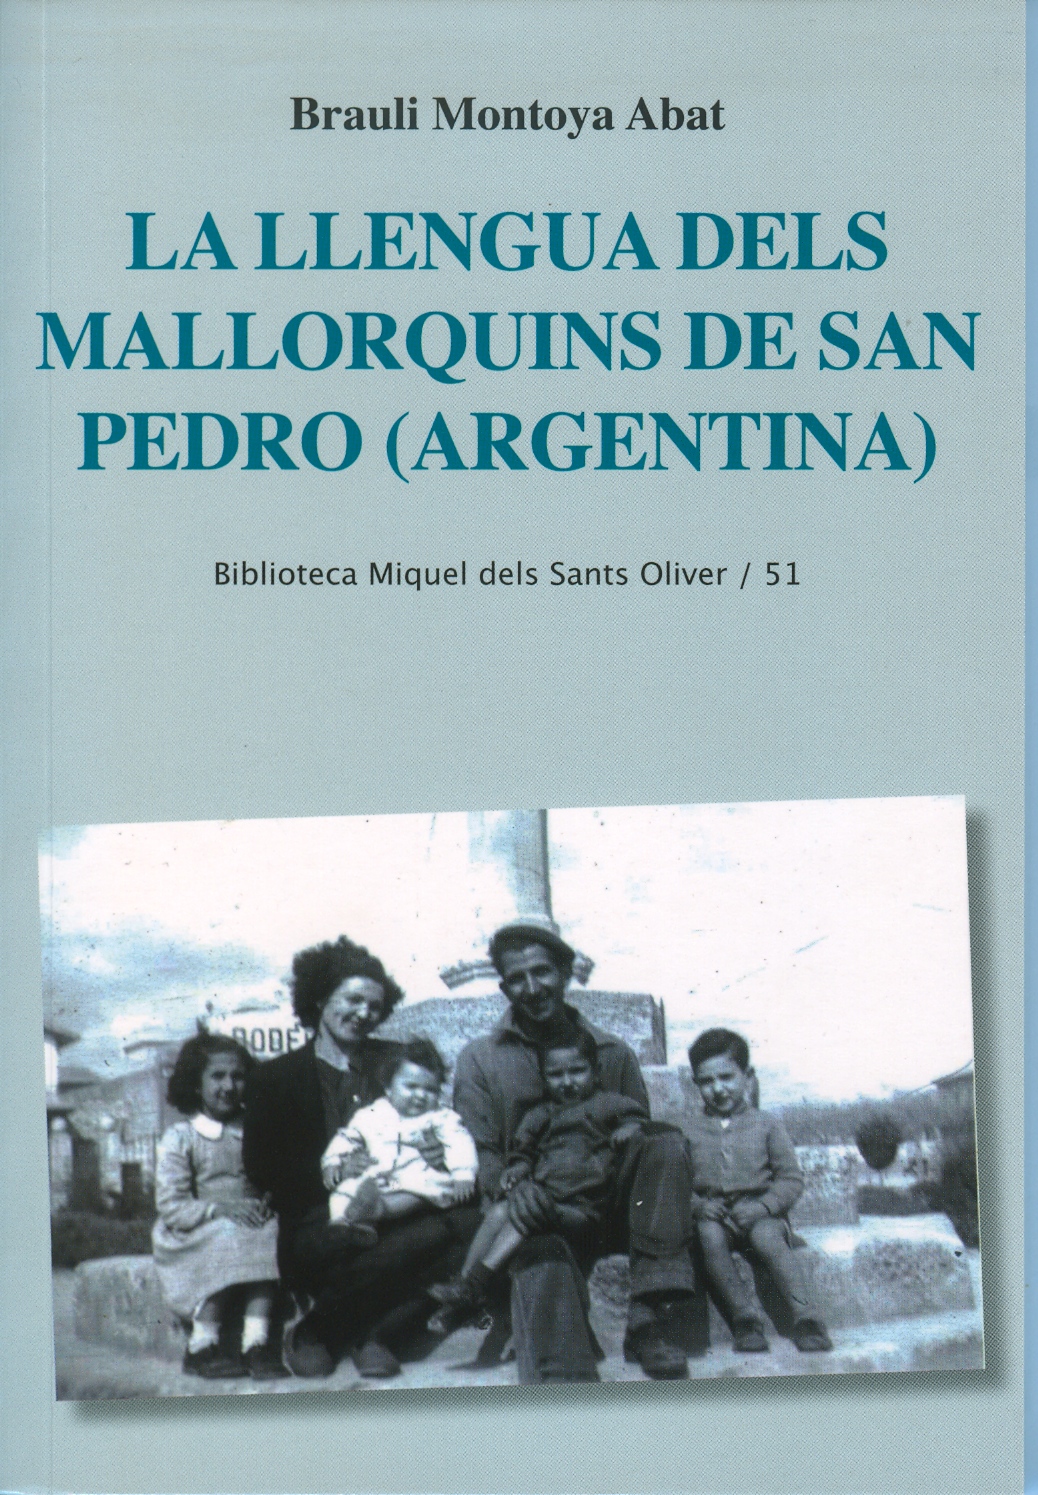 La llengua dels mallorquins de San Pedro (Argentina)